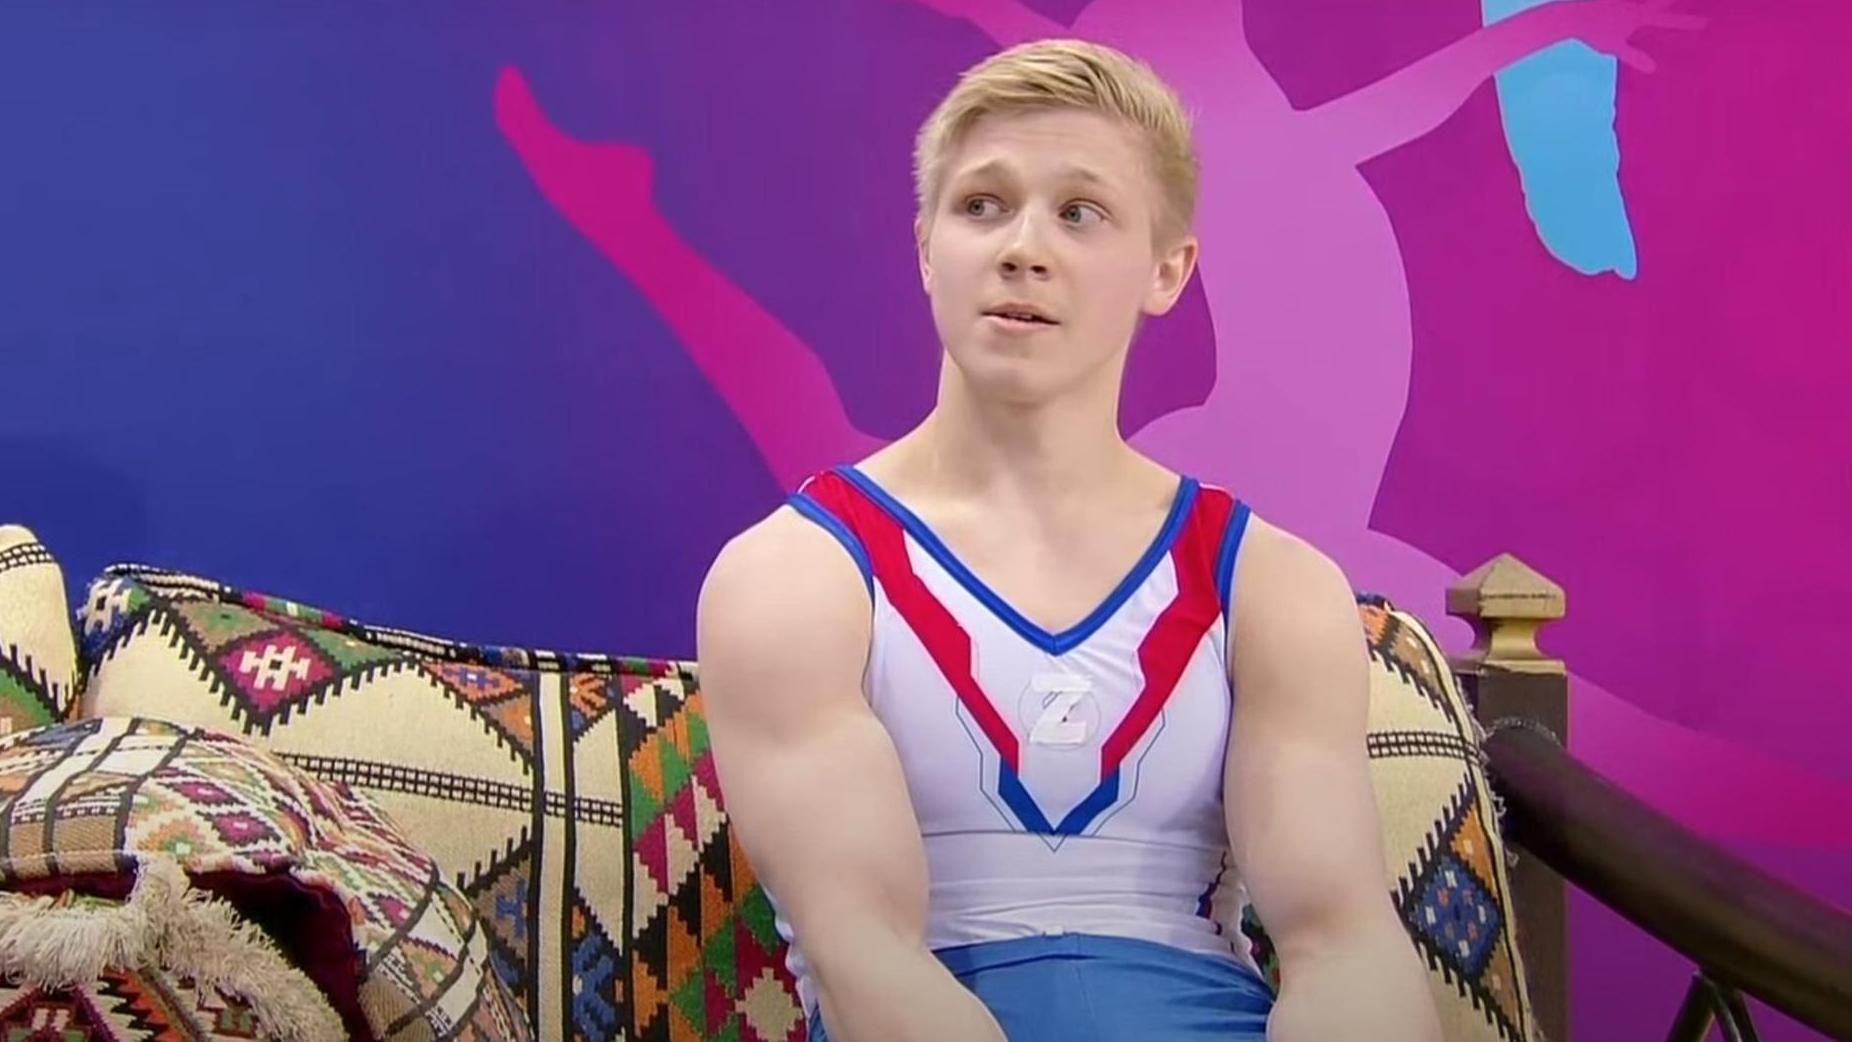 Міжнародна федерація гімнастики покарає нахабного росіянина зі свастикою Z на змаганнях - 24 канал Спорт